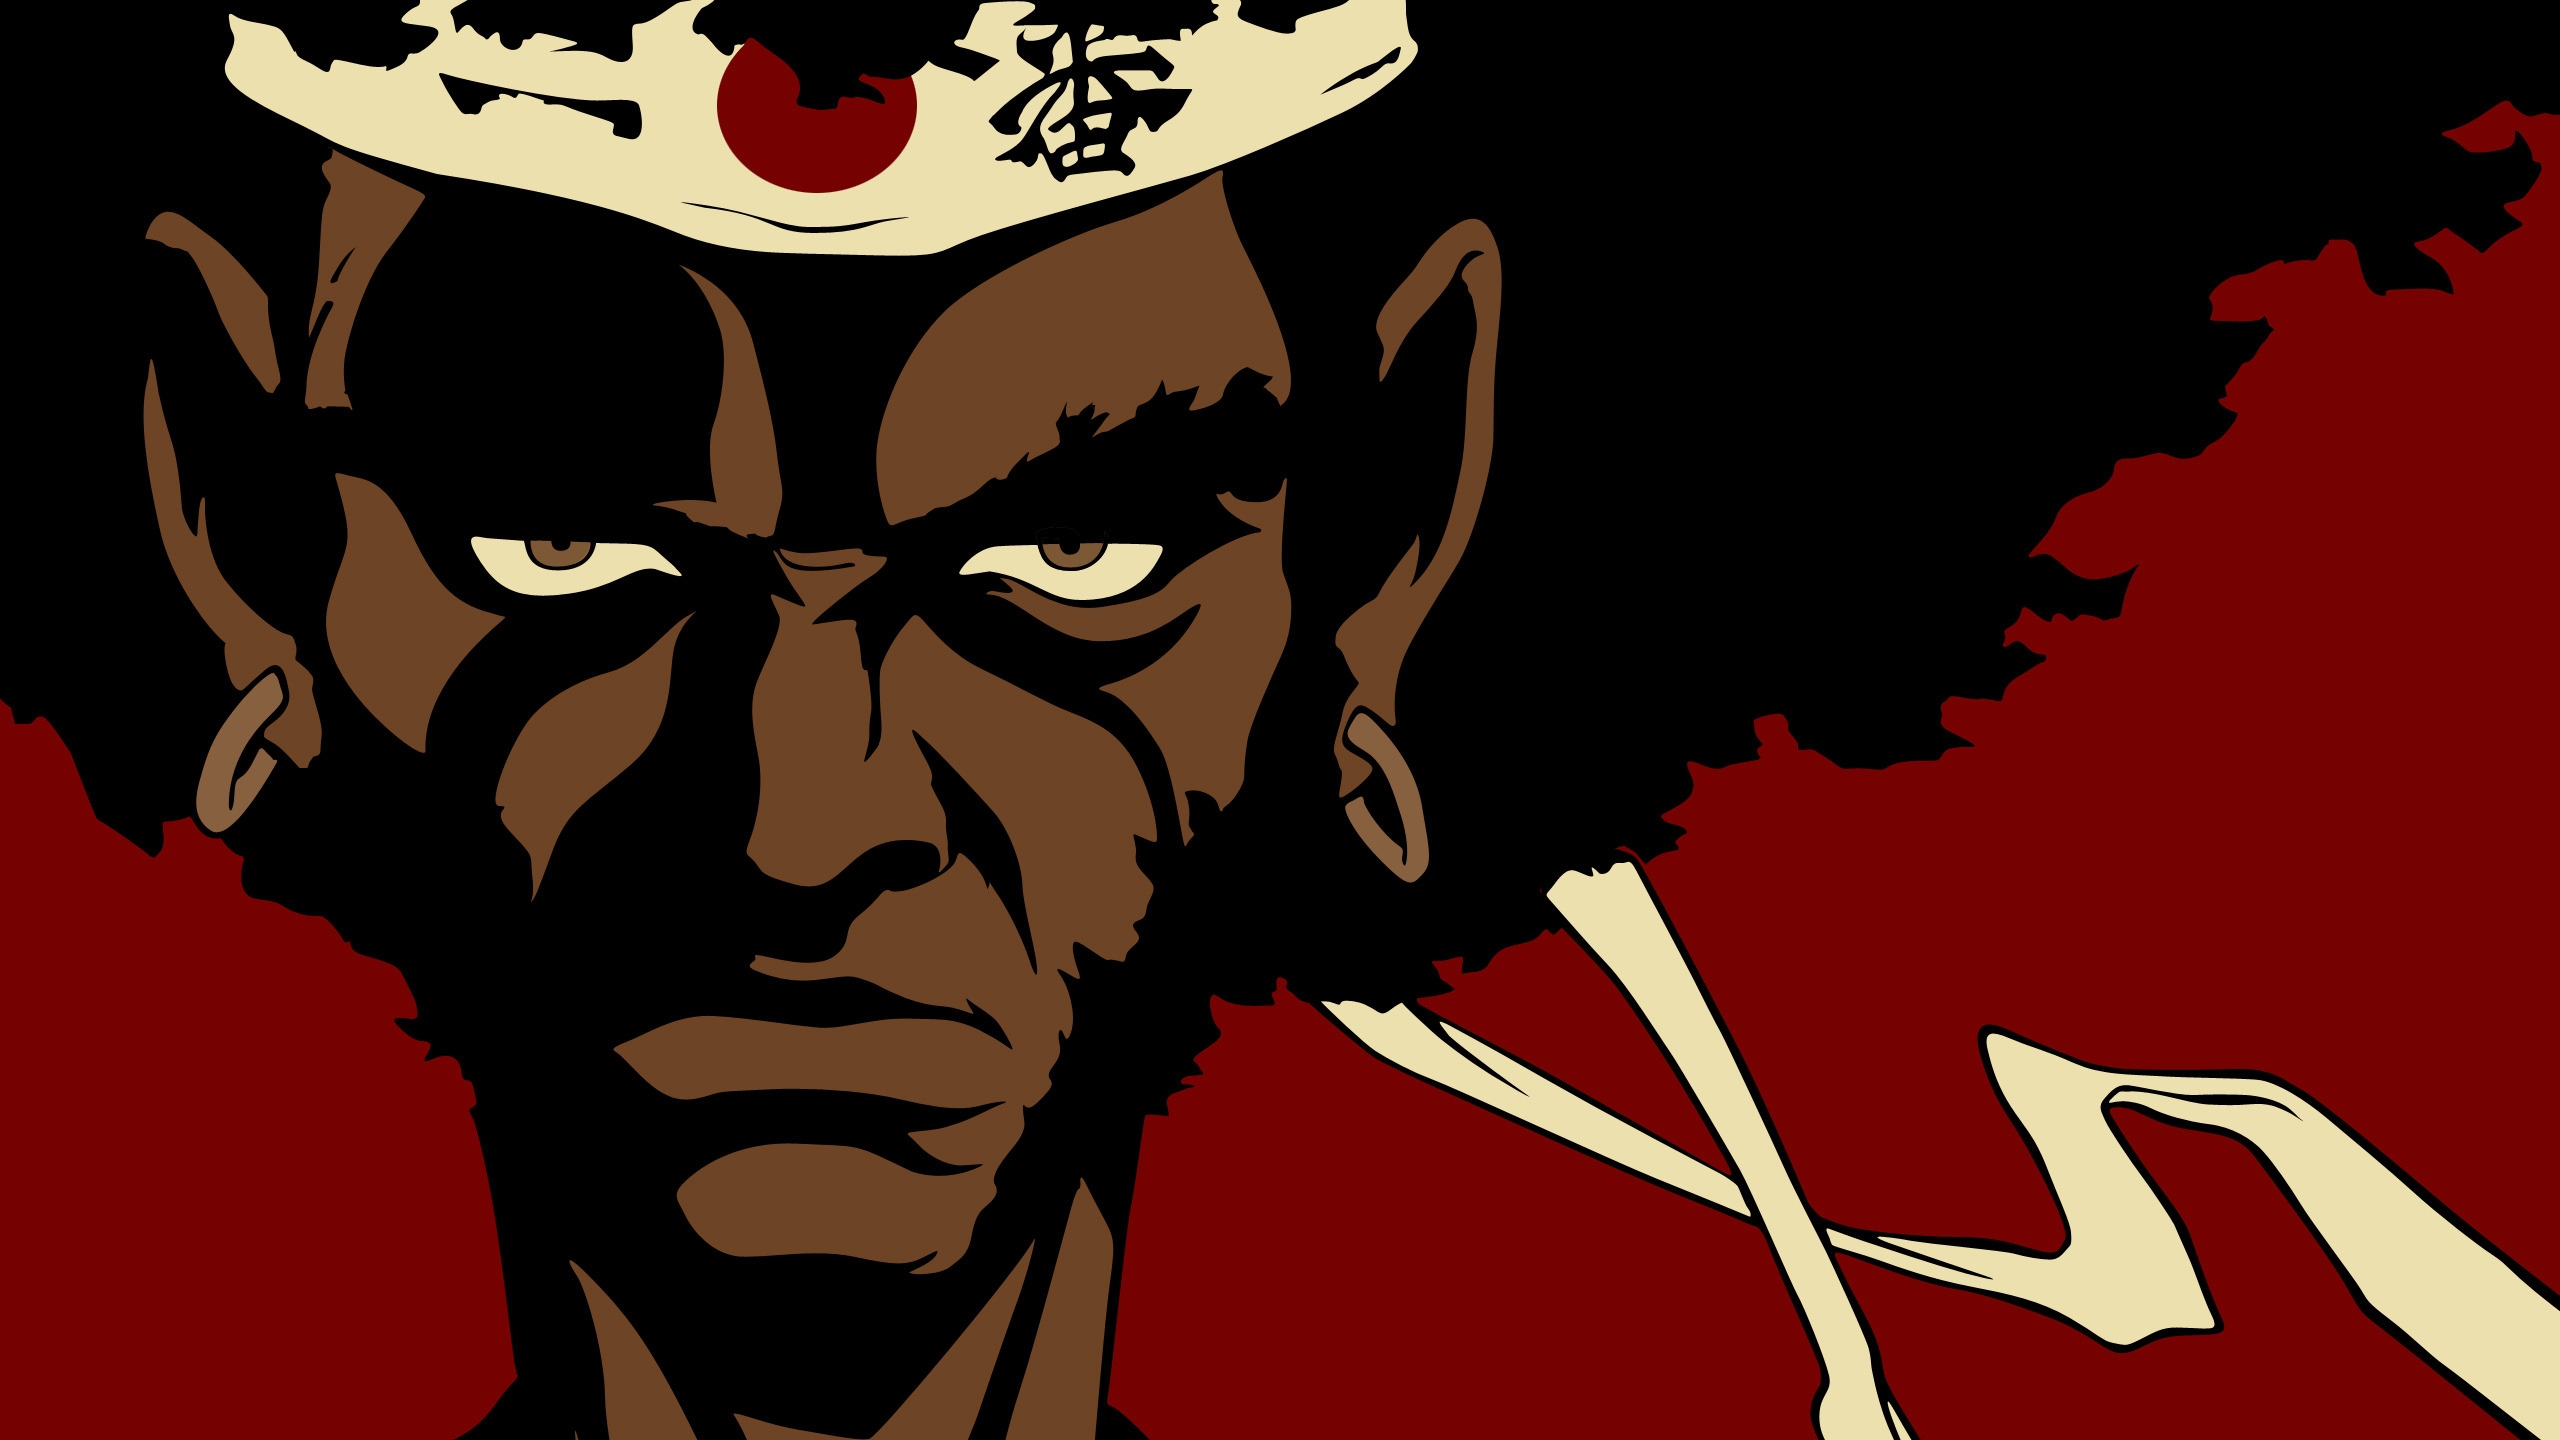 Afro Samurai Face for 2560x1440 HDTV resolution